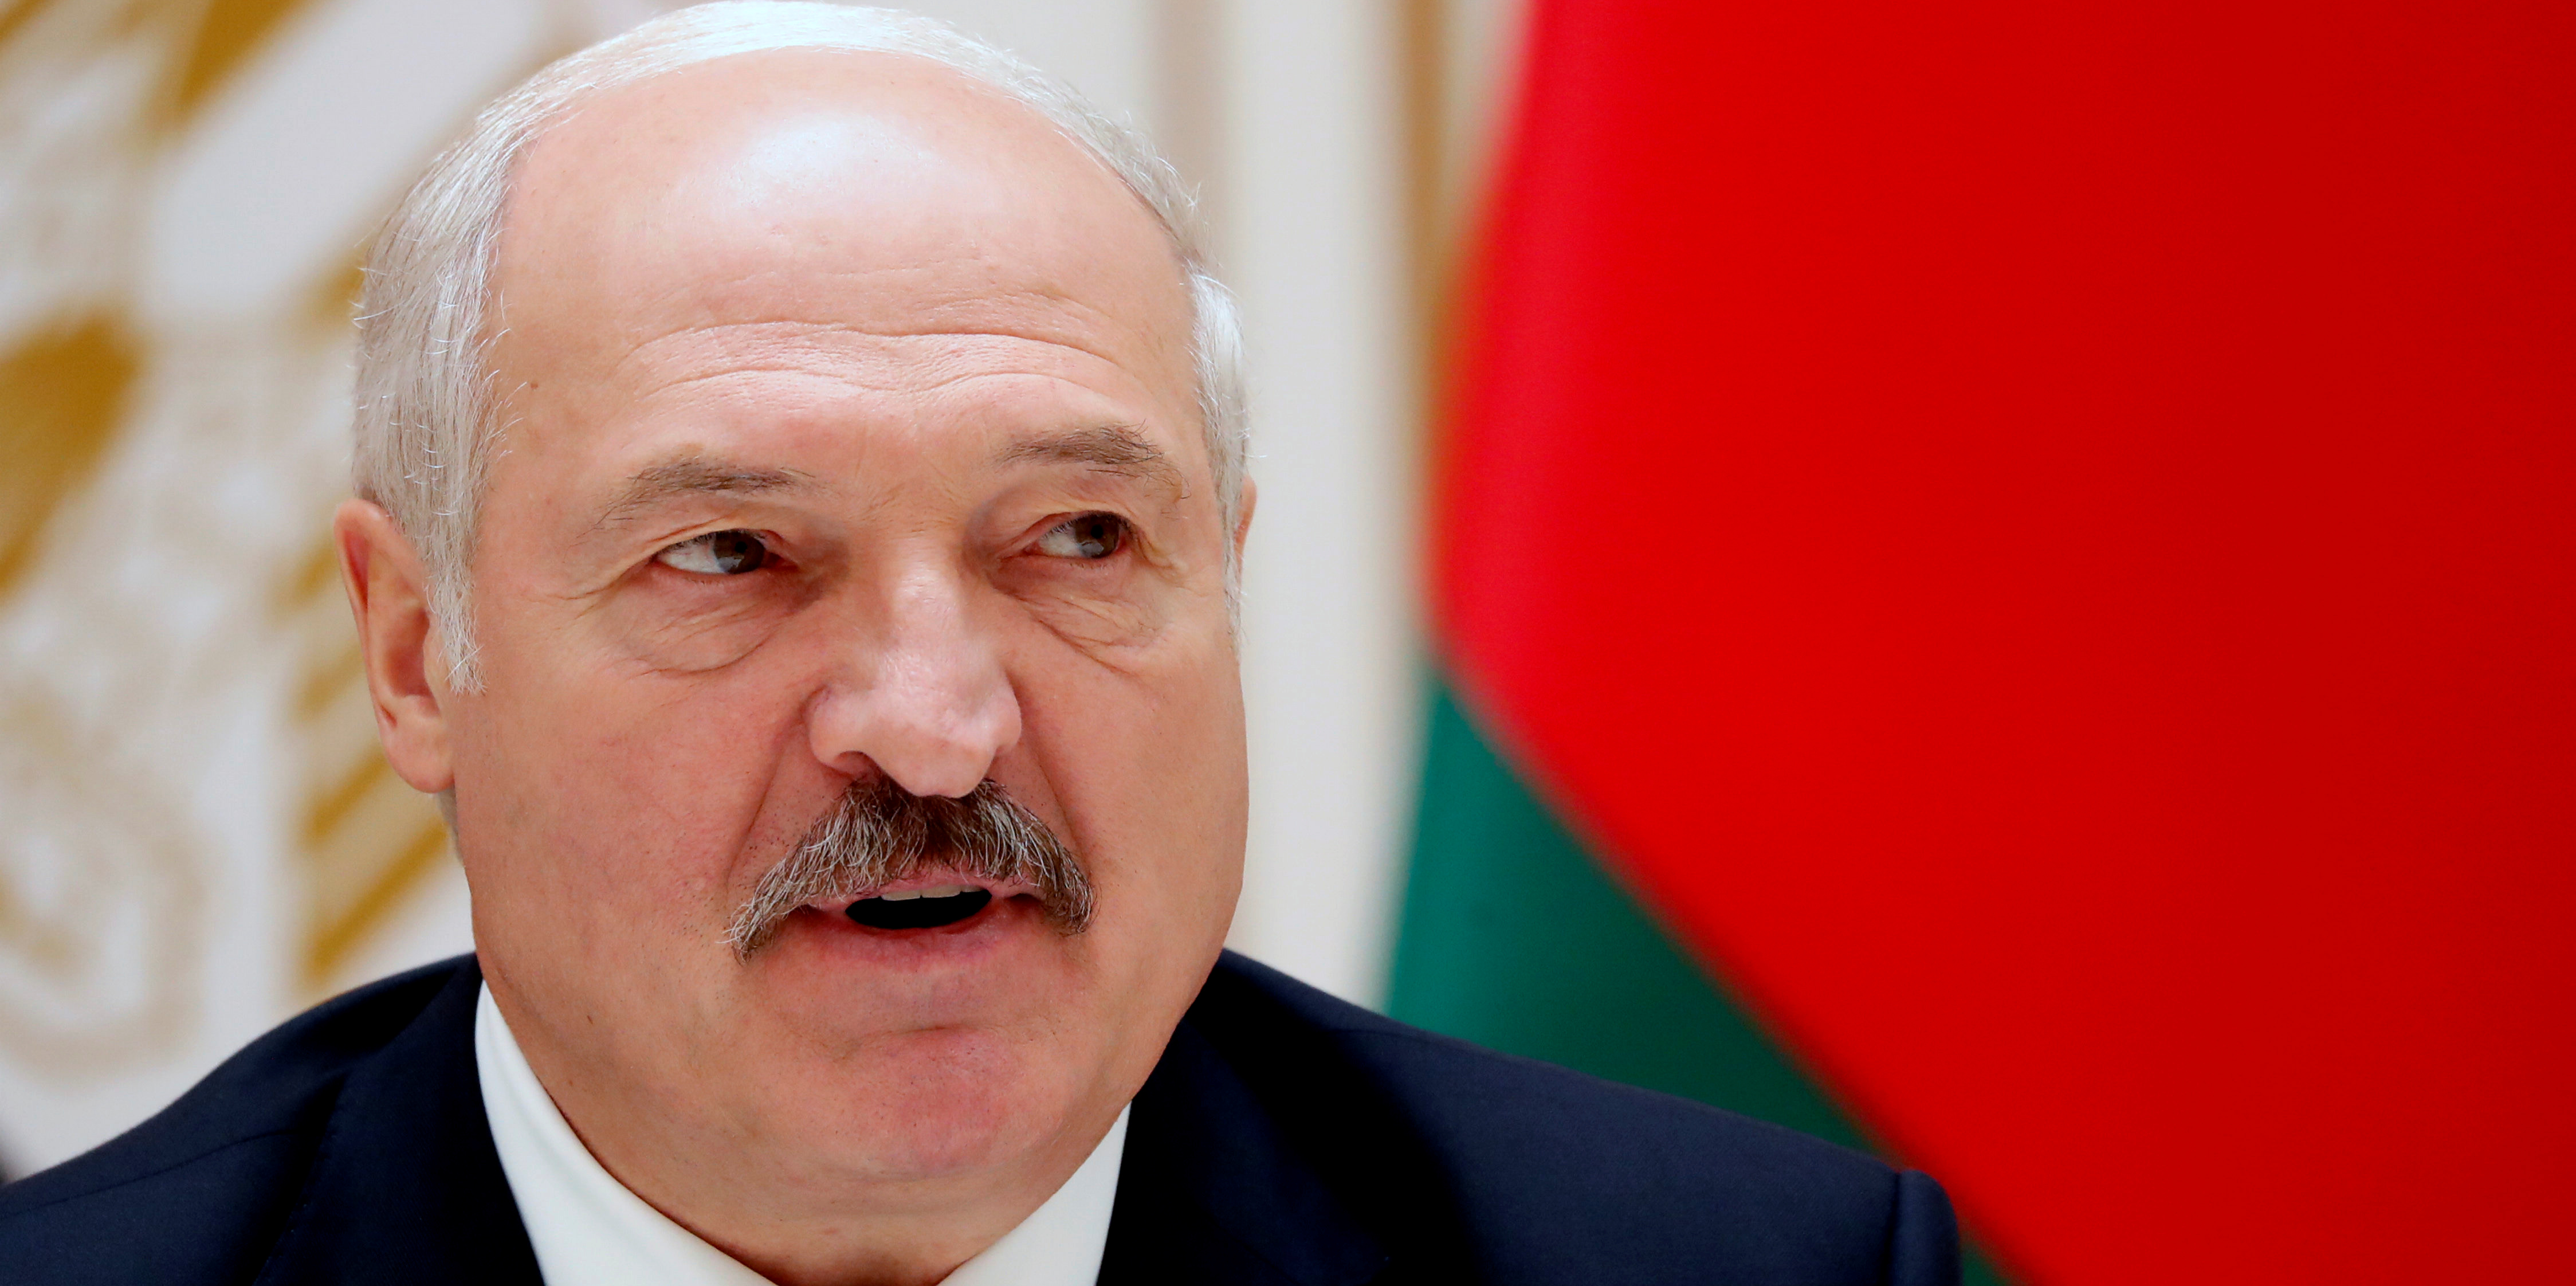 Guerre en Ukraine : l'UE renforce ses sanctions contre la Biélorussie, premier allié de la Russie